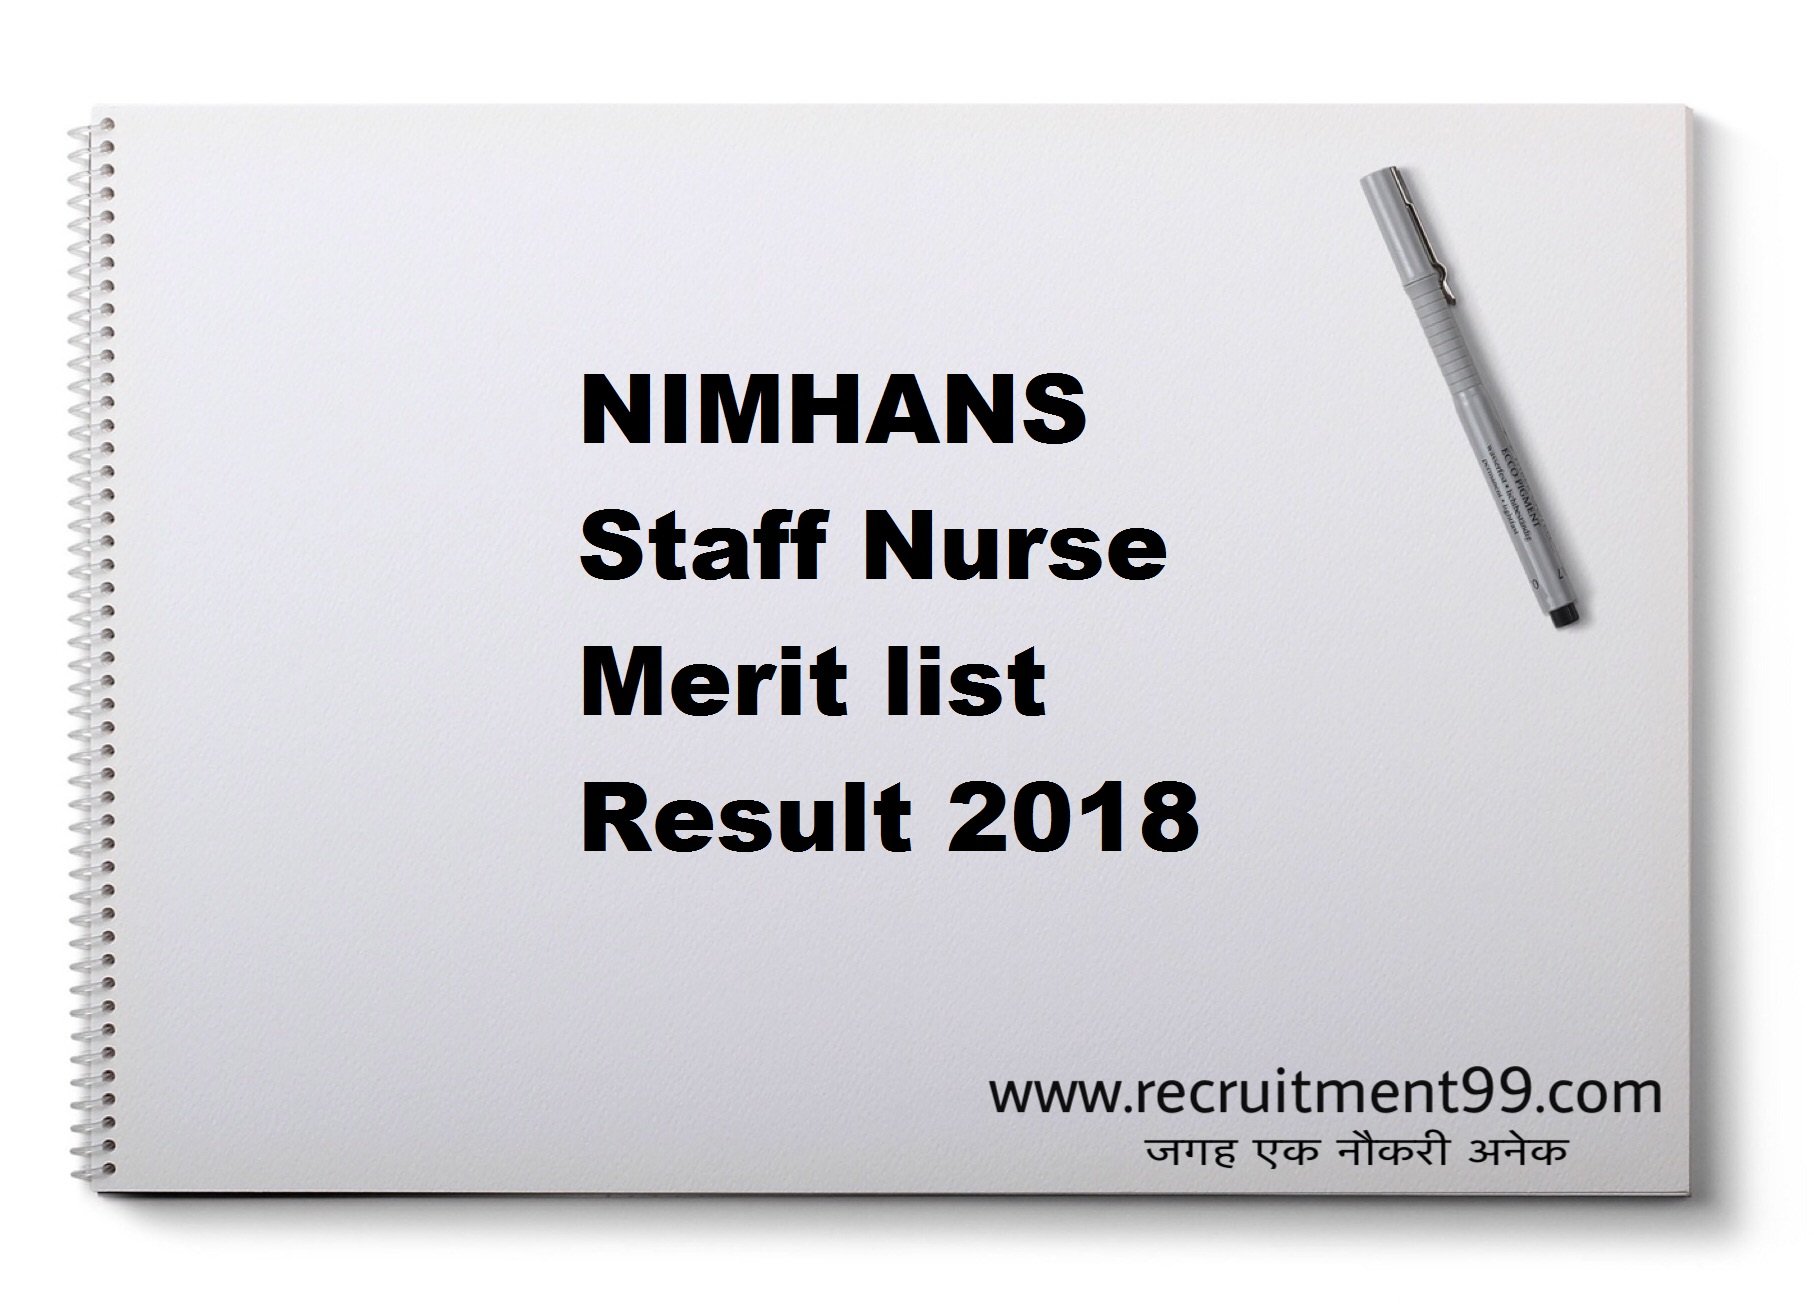 NIMHANS Staff Nurse Merit list Result 2018